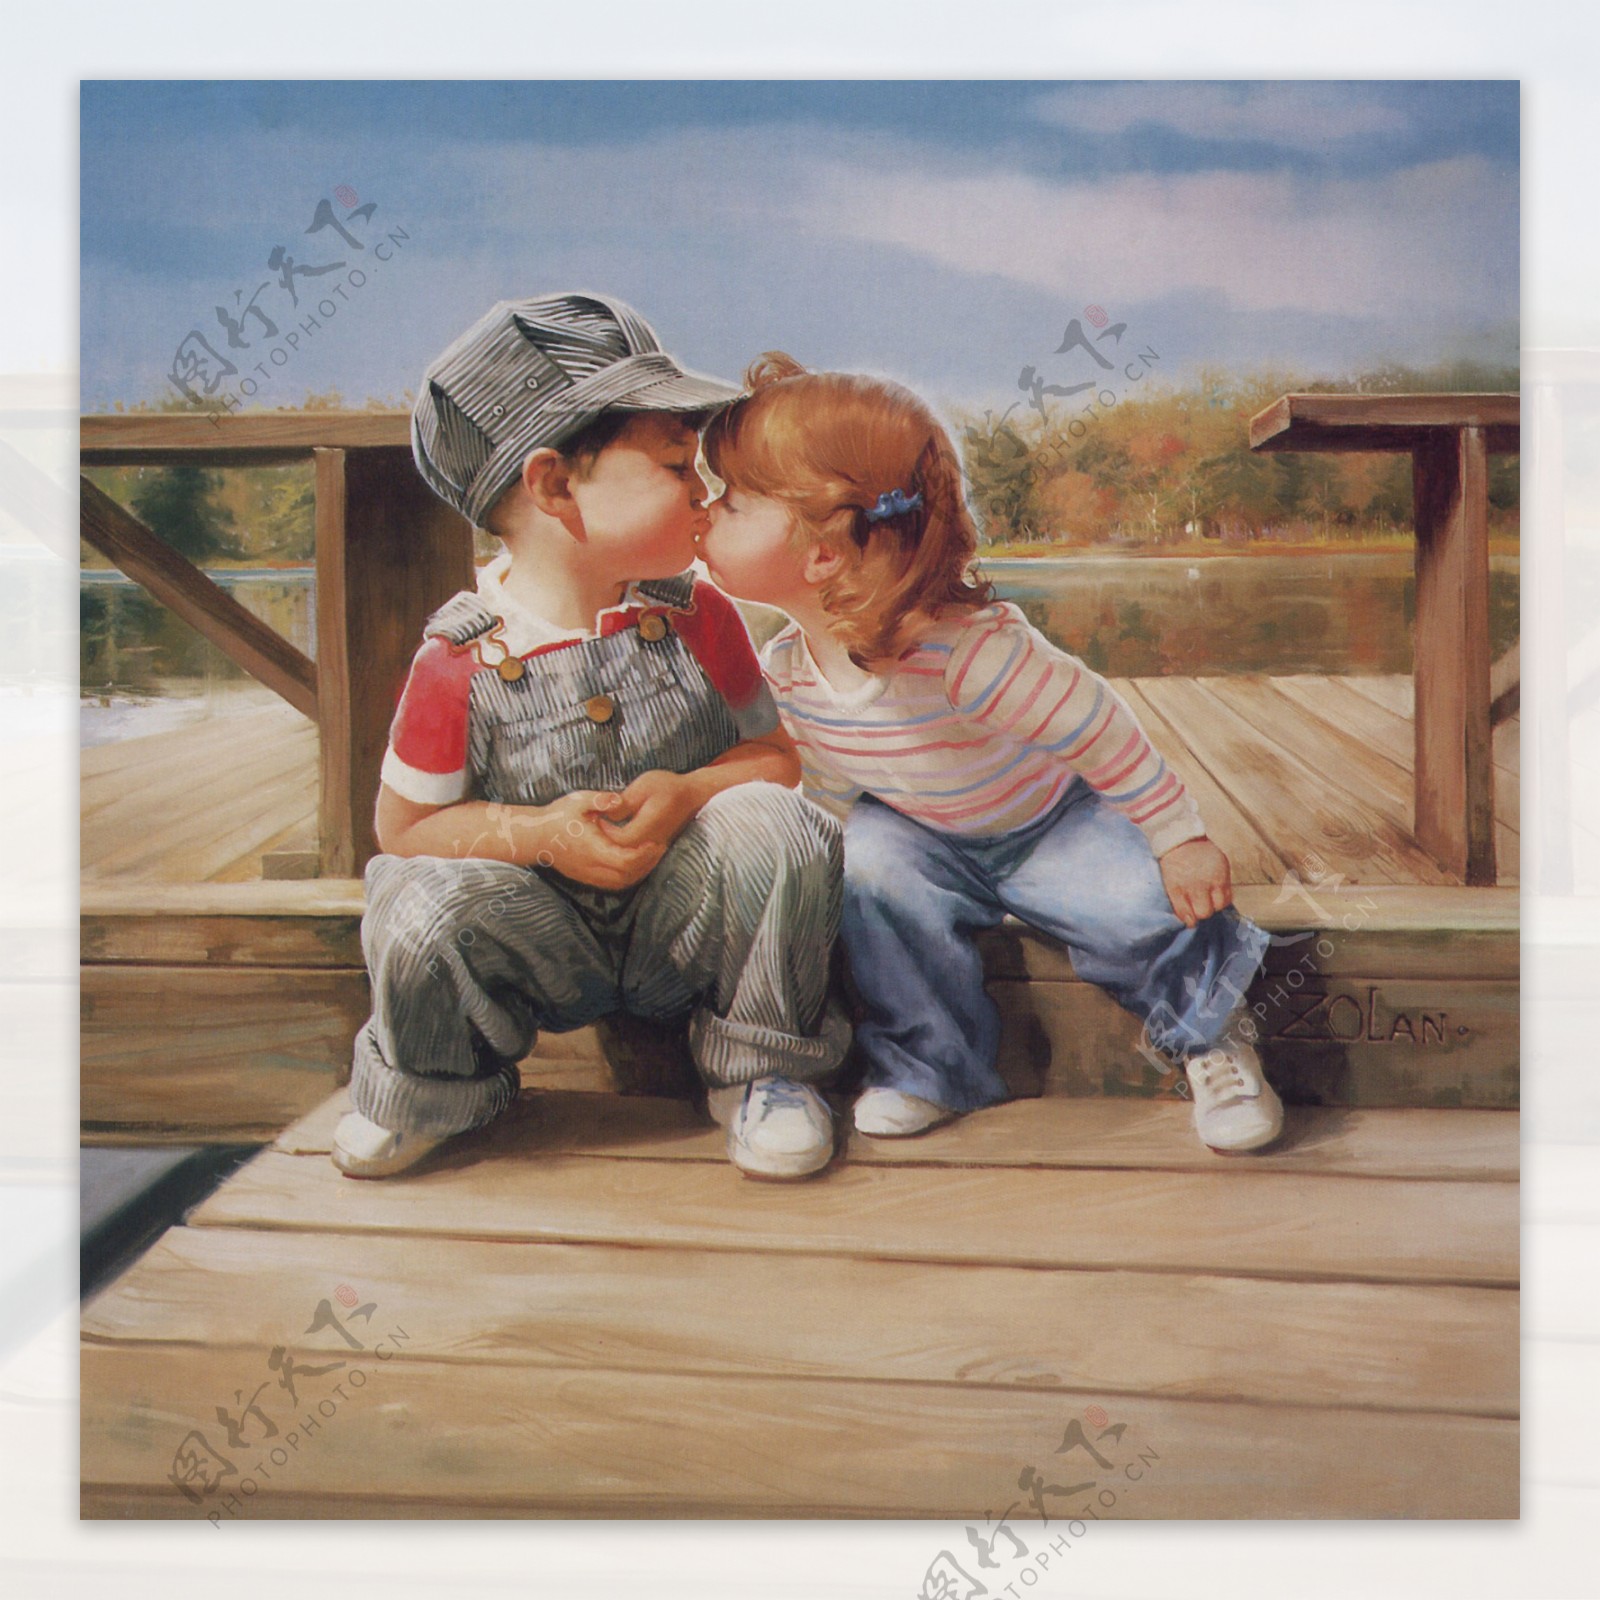 儿童逗人喜爱的亲吻的年轻人 库存图片. 图片 包括有 头发, 背包, 讨人喜欢, 子项, 面颊, 敬慕, 蓝色 - 24820665